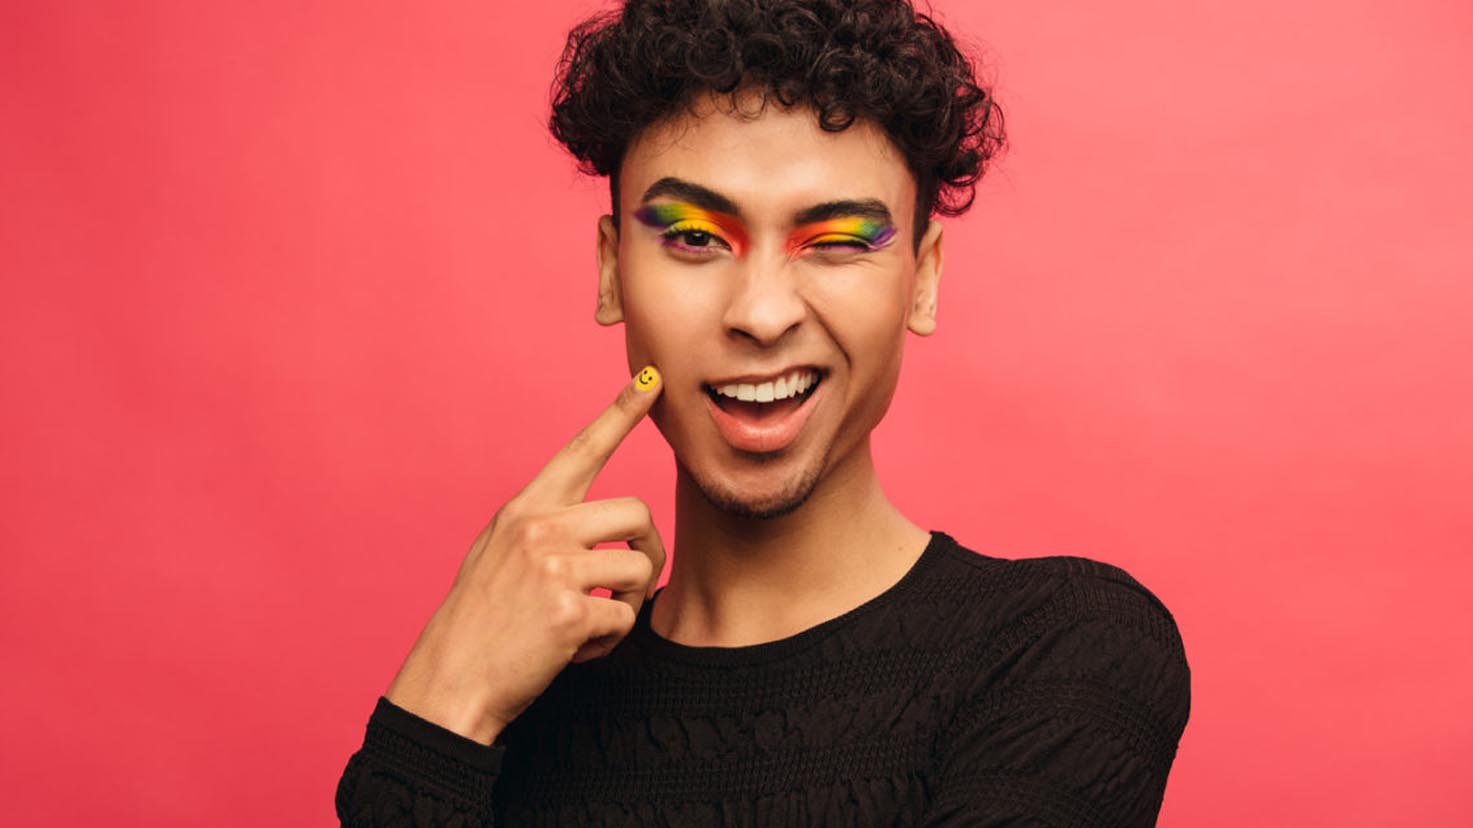 Gay man with rainbow eyeshadow winking at camera